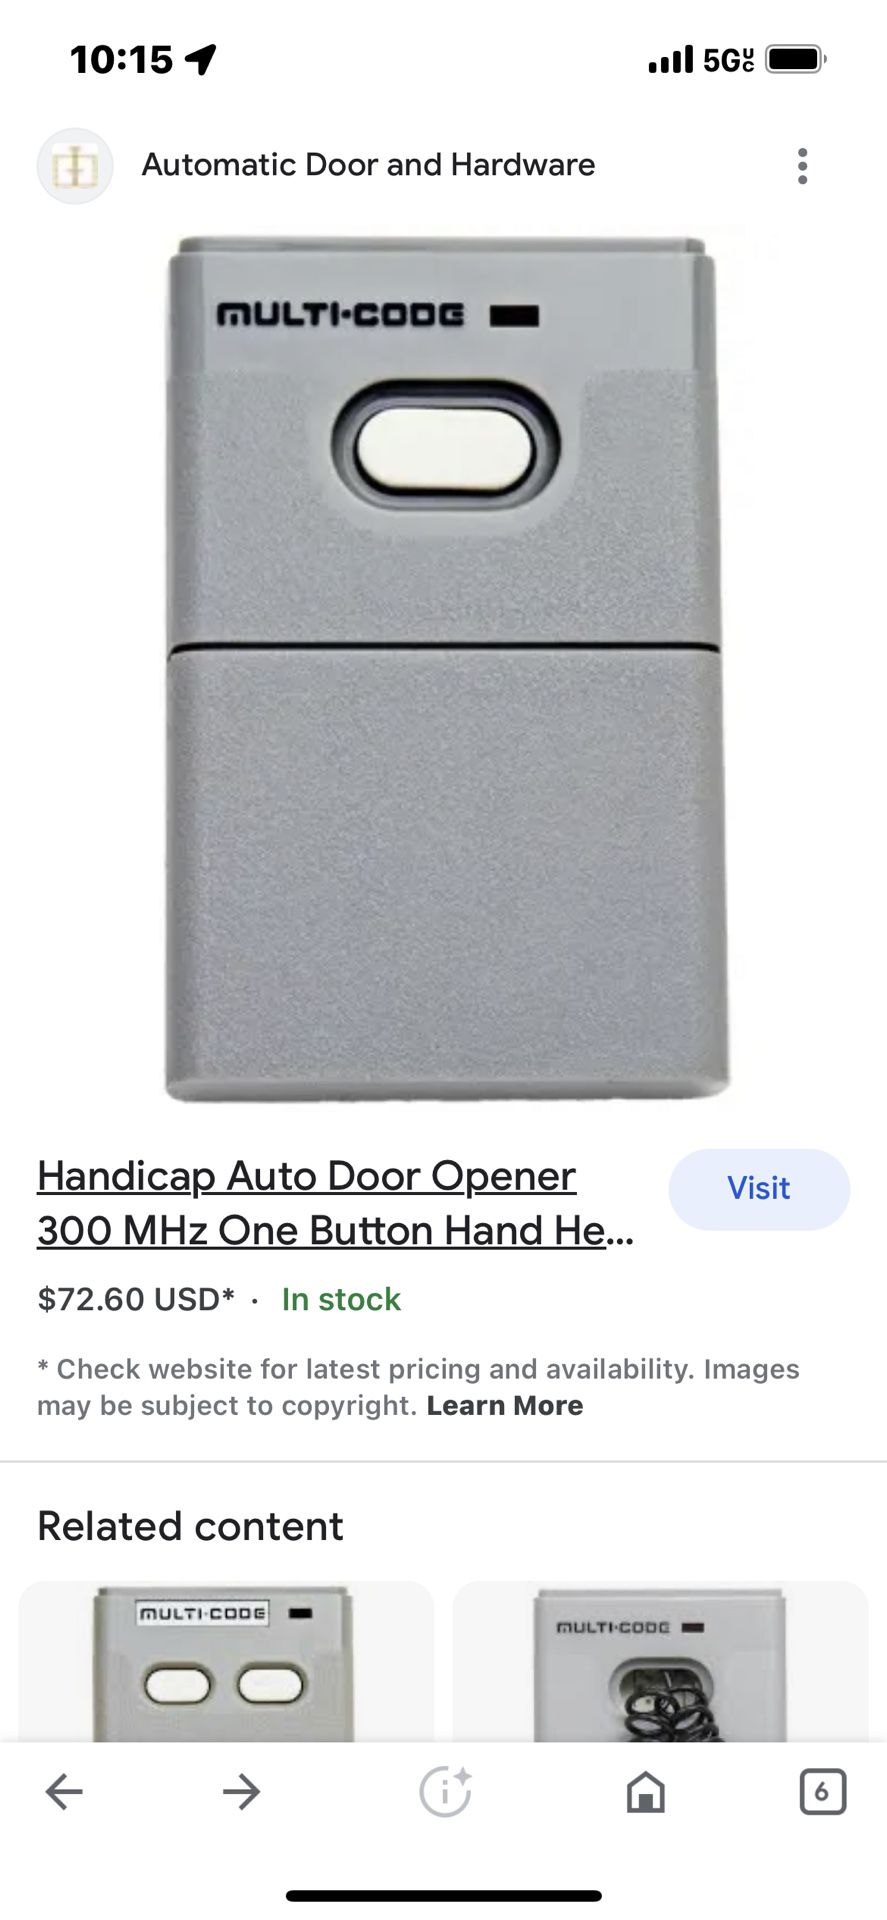 Handicap Auto Door Opener 300 MHz One Button Hand-Held